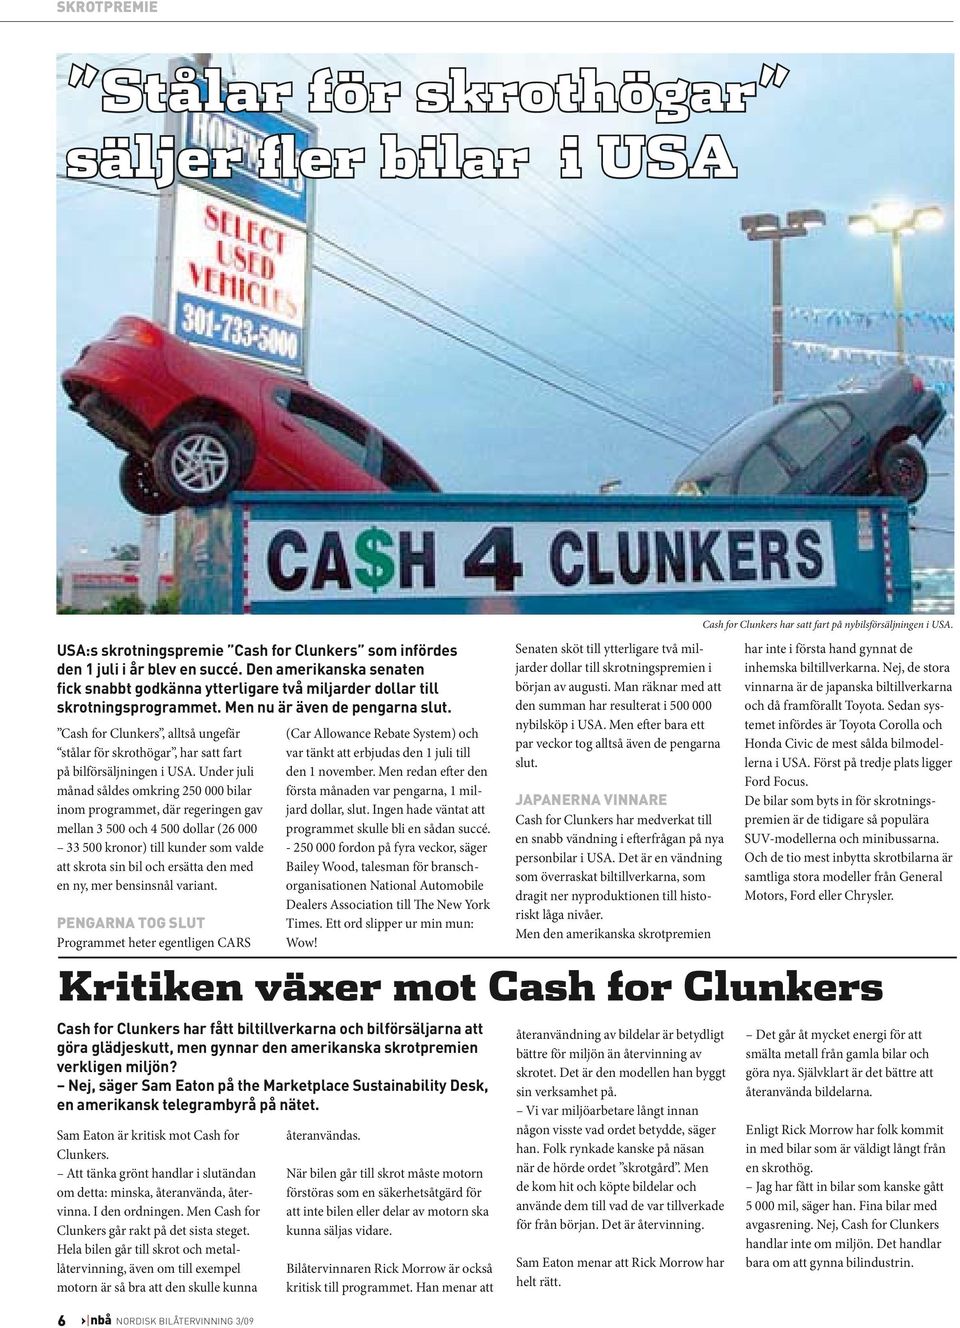 Cash for Clunkers, alltså ungefär stålar för skrothögar, har satt fart på bilförsäljningen i USA.